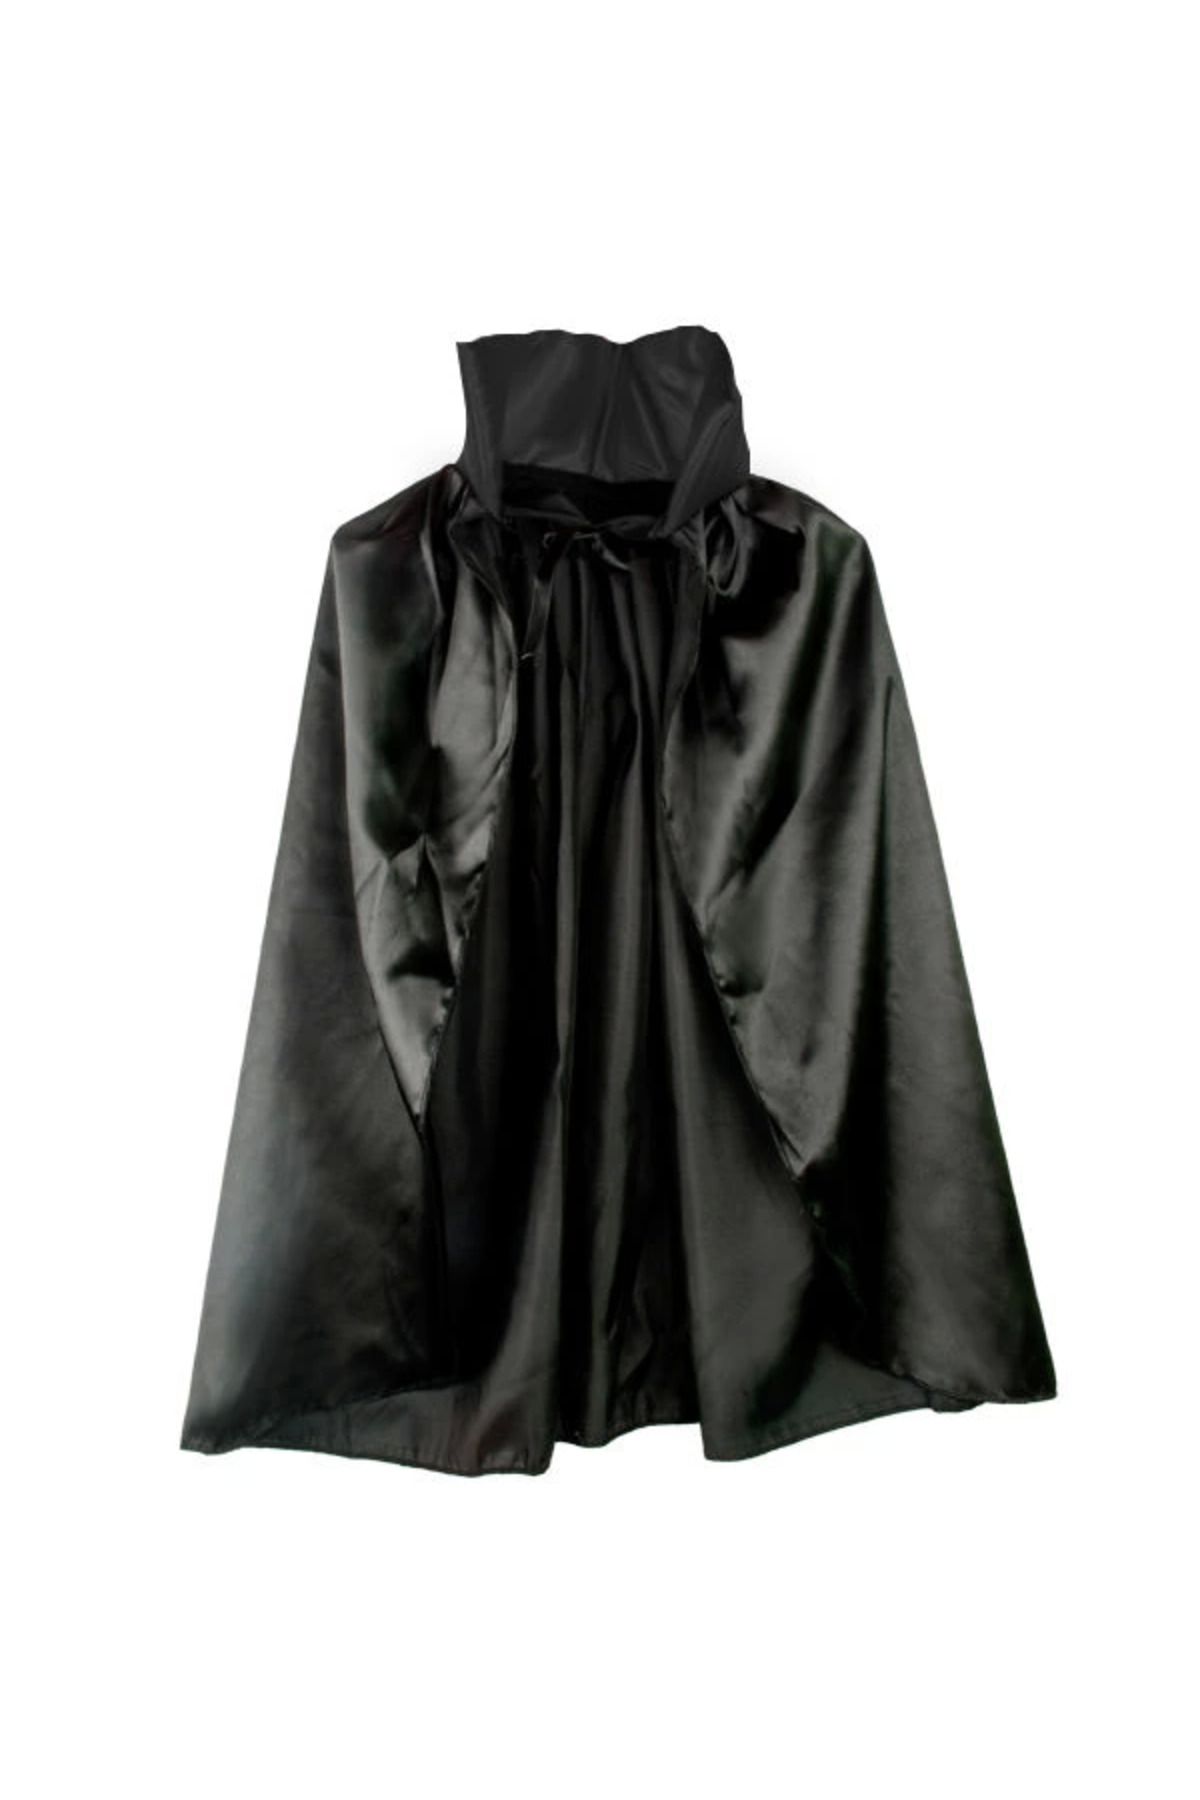 YNT Siyah Renk Yakalı Halloween Pelerini 90 Cm